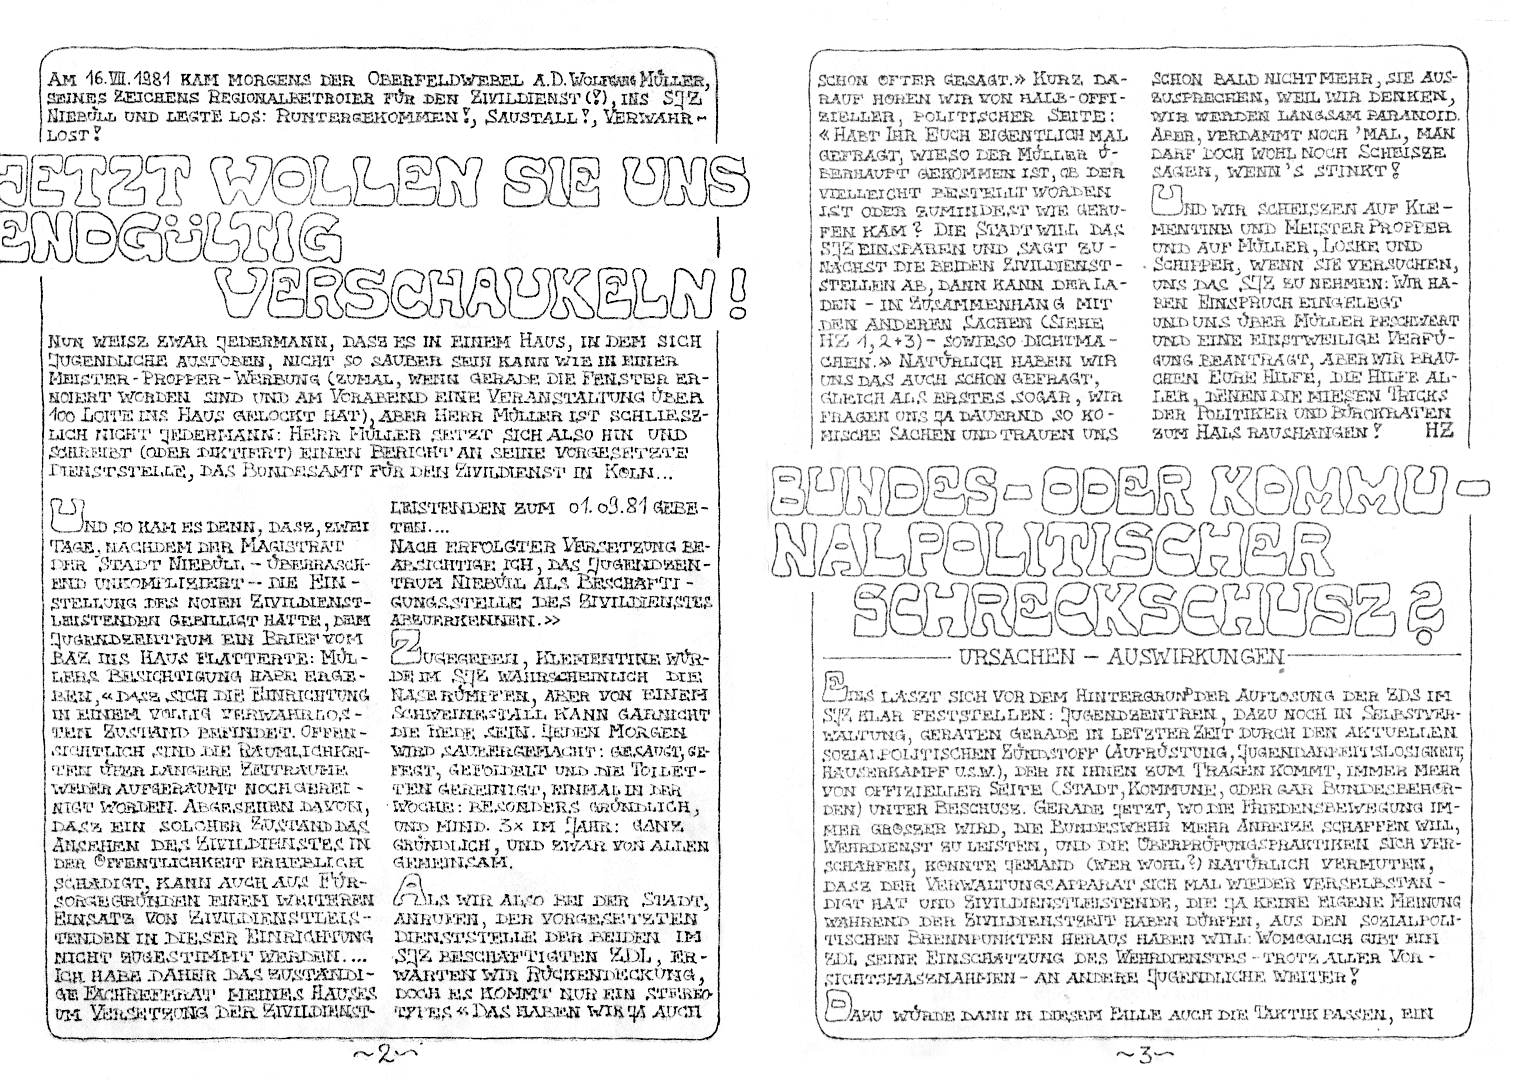 EXTRA - Seite 2 und 3